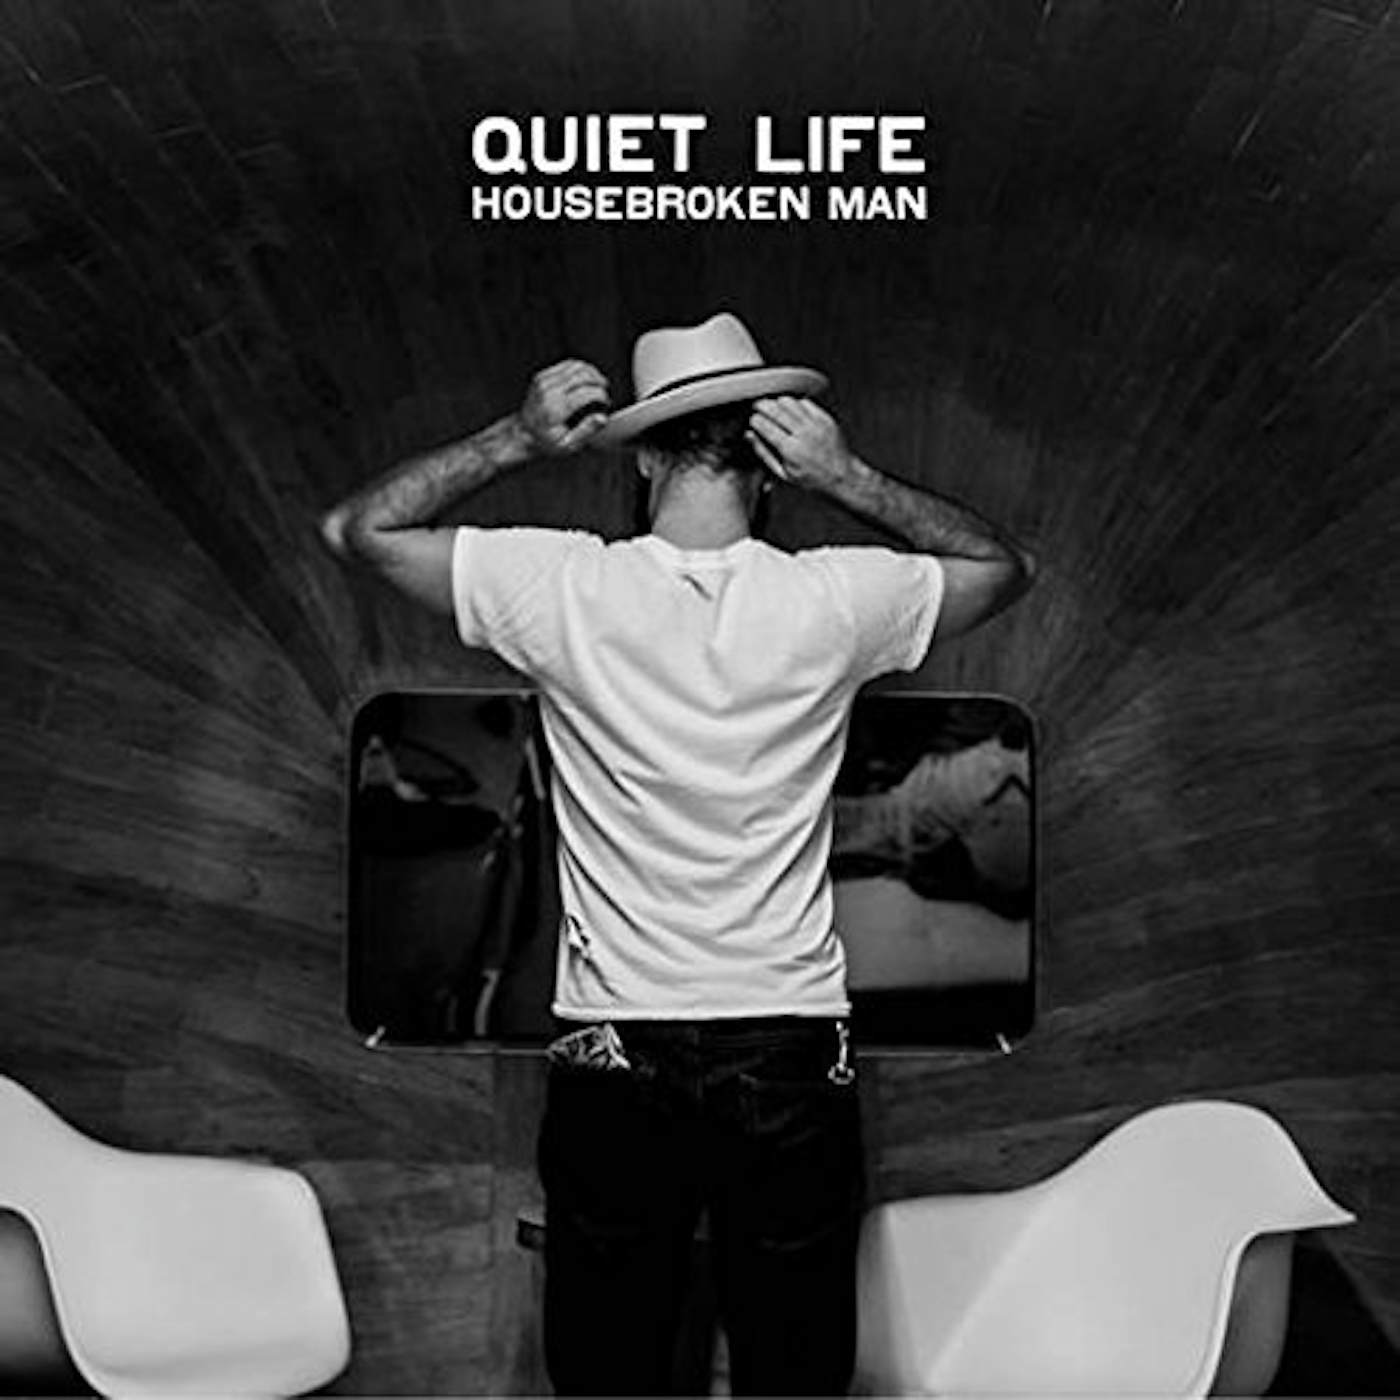 Quiet Life HOUSEBROKEN MAN CD